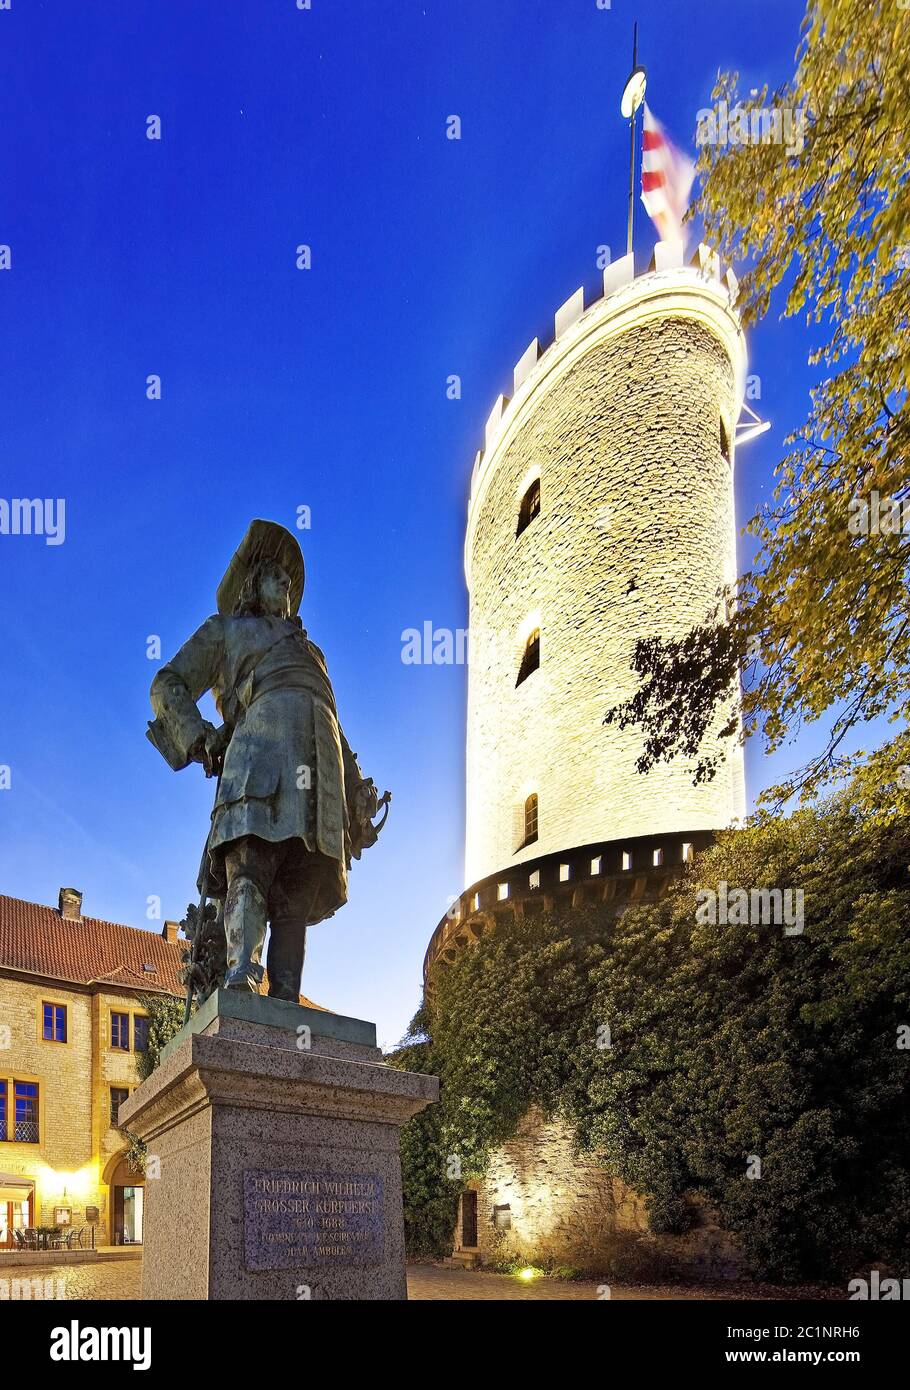 Beleuchtete Sparrenburg und Statue von Friedrich Wilhelm, Bielefeld, Deutschland, Europa Stockfoto